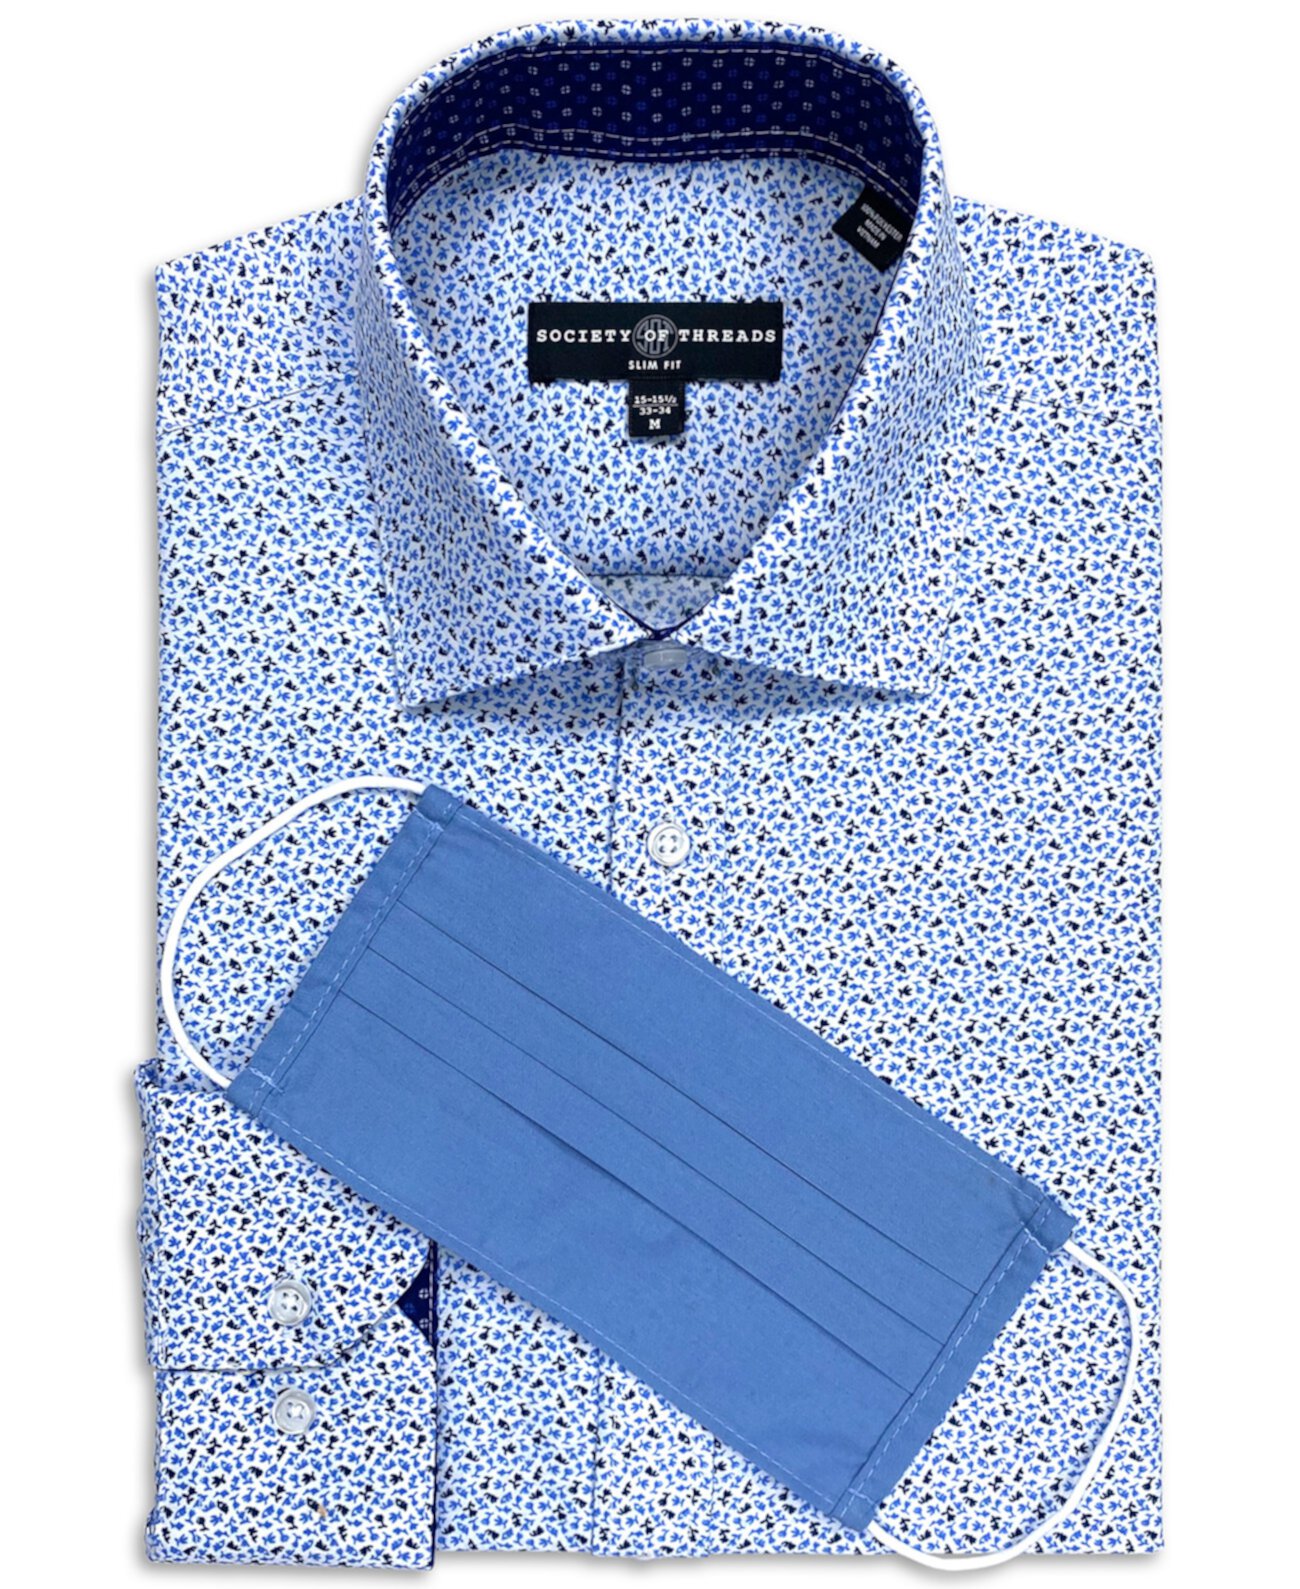 Мужская приталенная классическая рубашка с цветочным принтом без железа Society of Threads